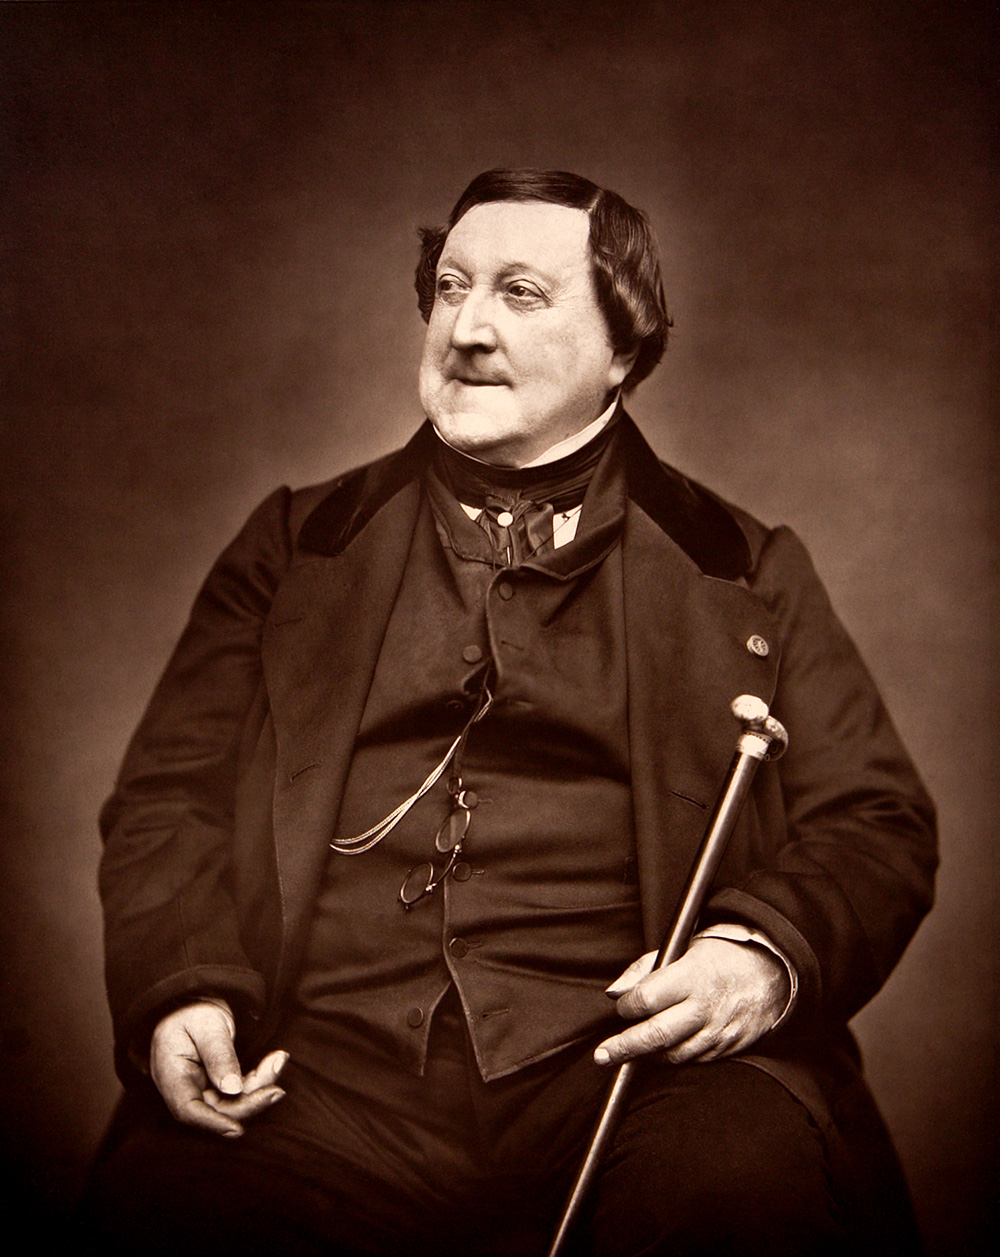 Composer_Rossini_G_1865_by_Carjat_-_Restoration.jpg